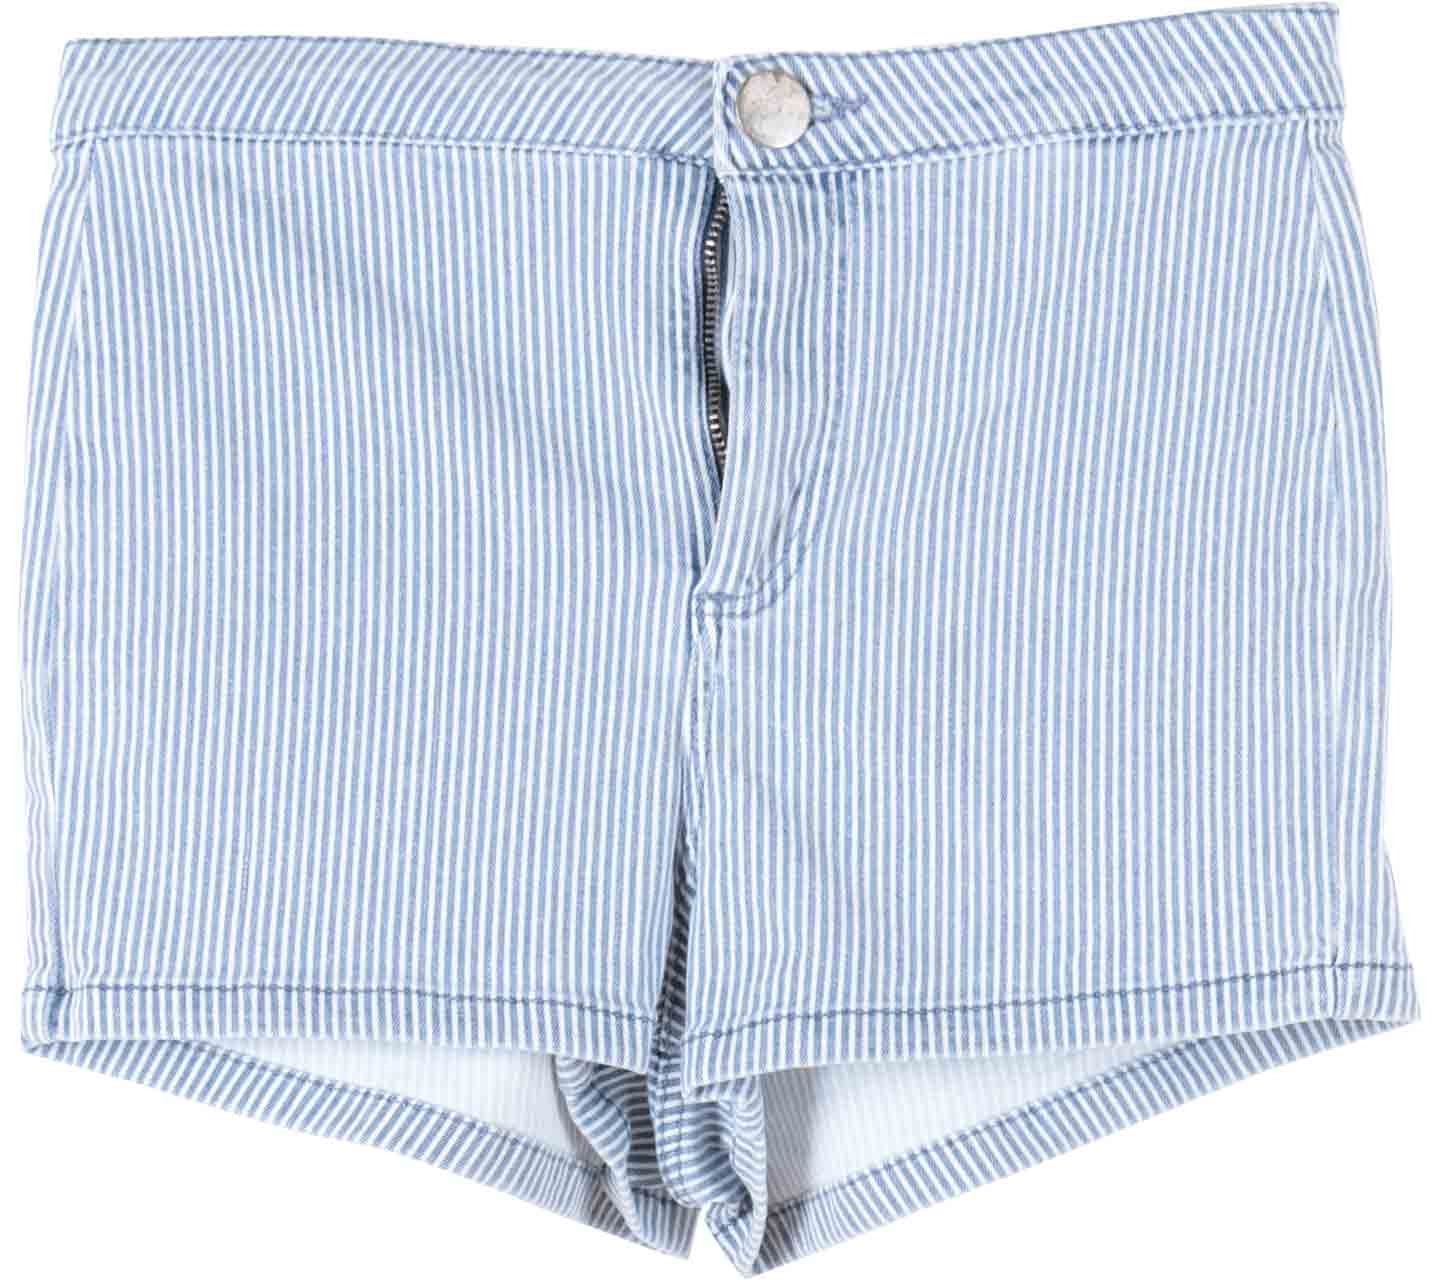 Topshop Blue Striped Jeans Short Pants